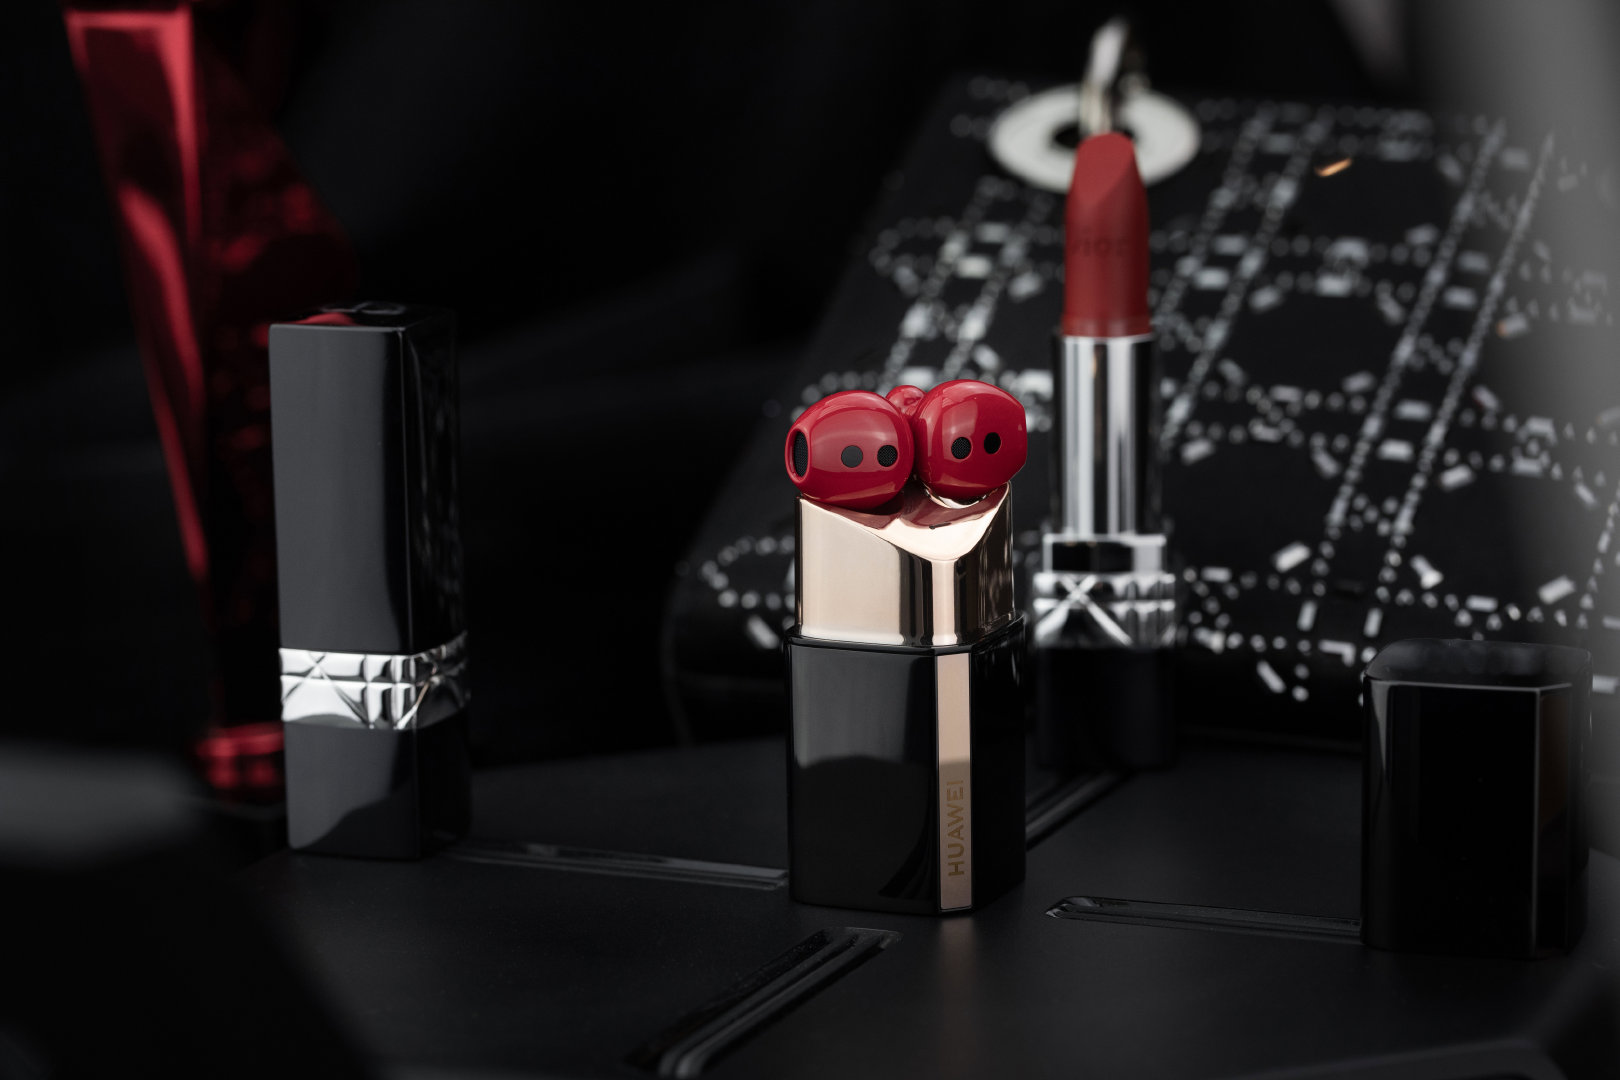 Huawei ra mắt tai nghe FreeBuds Lipstick tại VN:
Thiết kế hình thỏi son, giá 4.9 triệu đồng